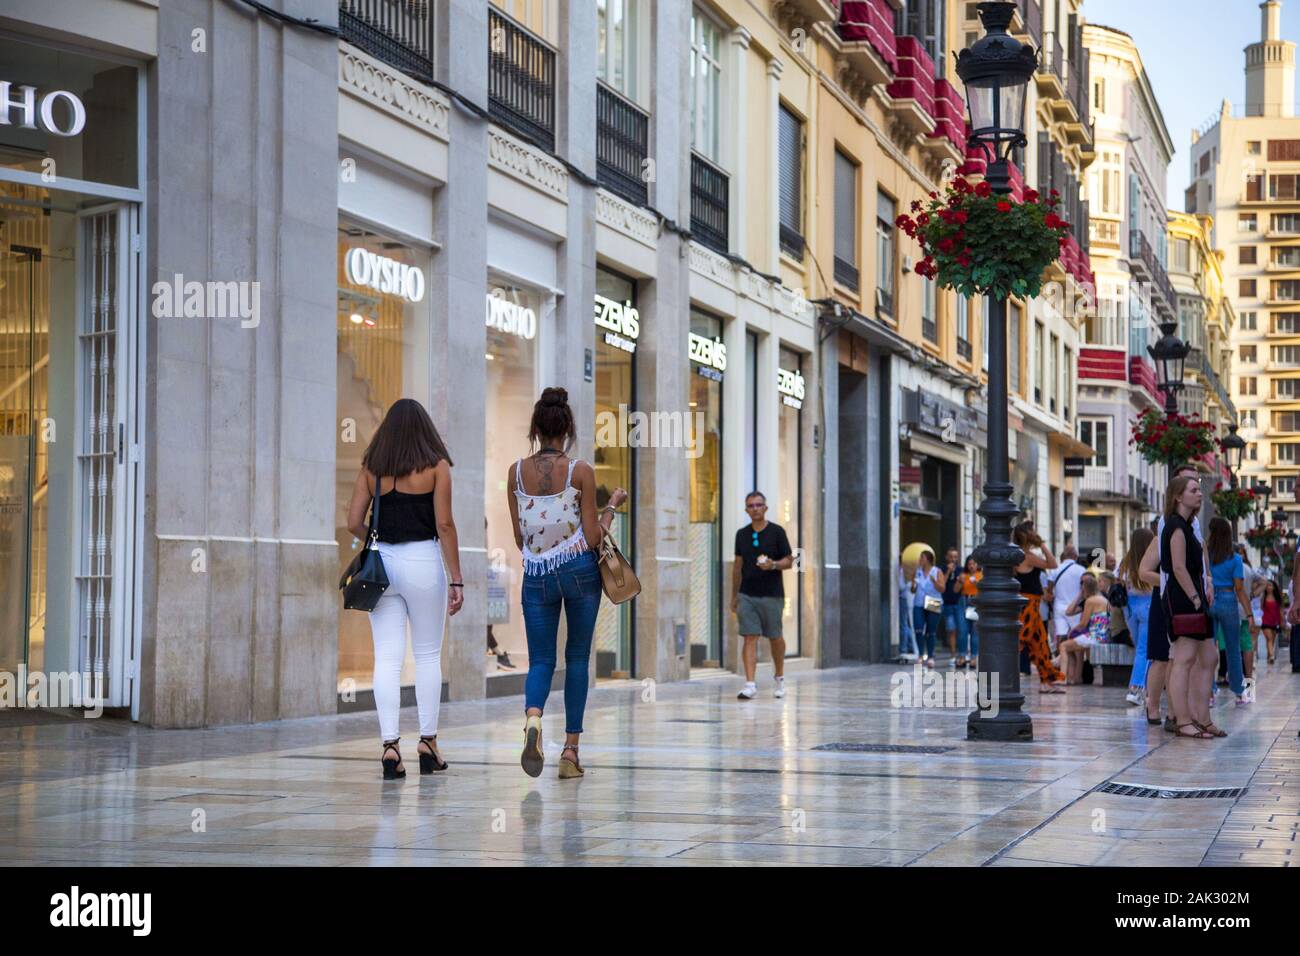 Provinz Malaga/Stadt Malaga: elegante shopping- und Flaniermeile Marques de Larios, Andalusien | Utilizzo di tutto il mondo Foto Stock